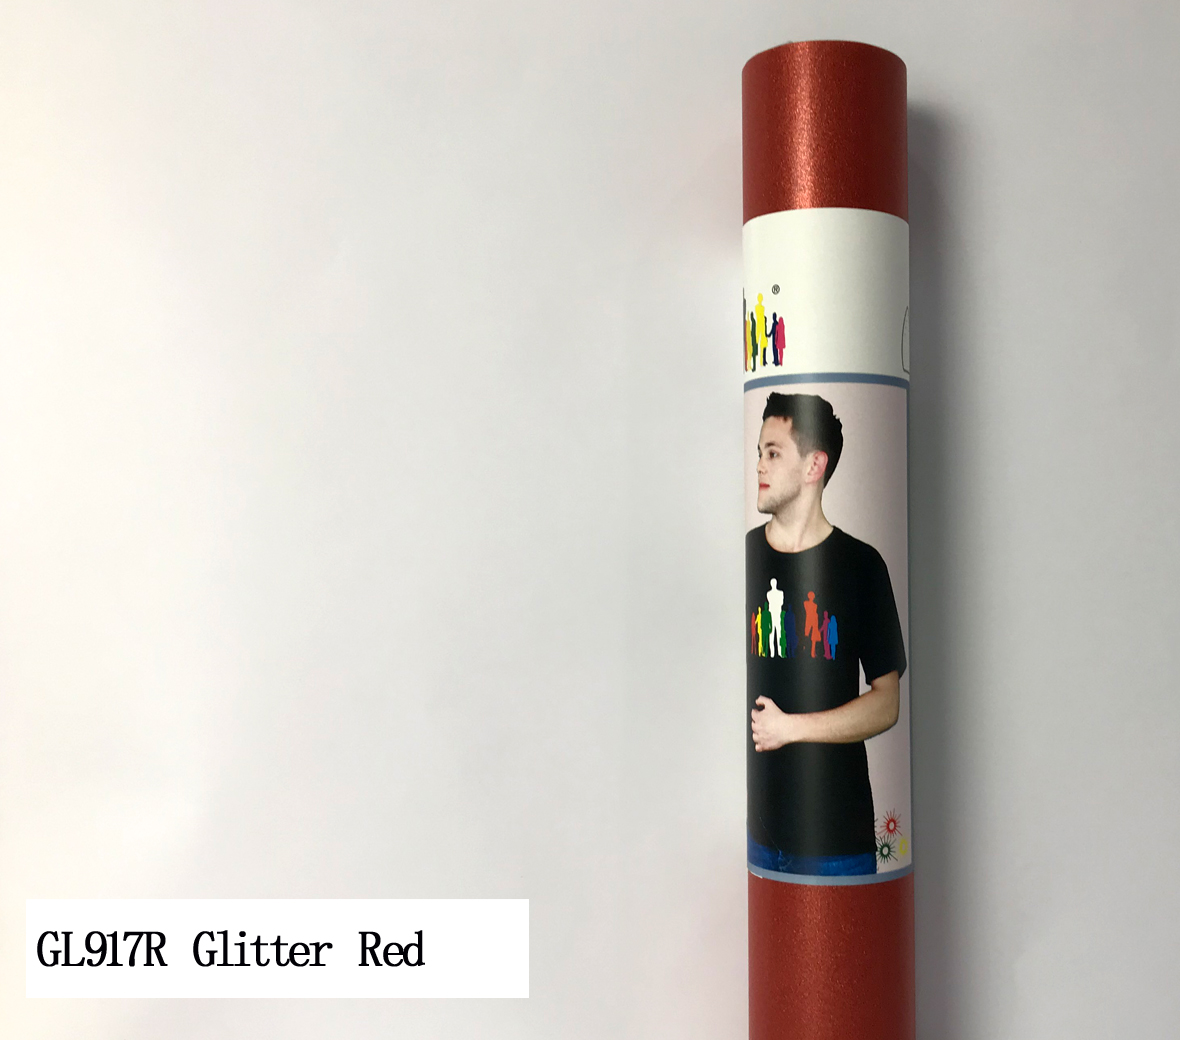 GL917R Glitter Red